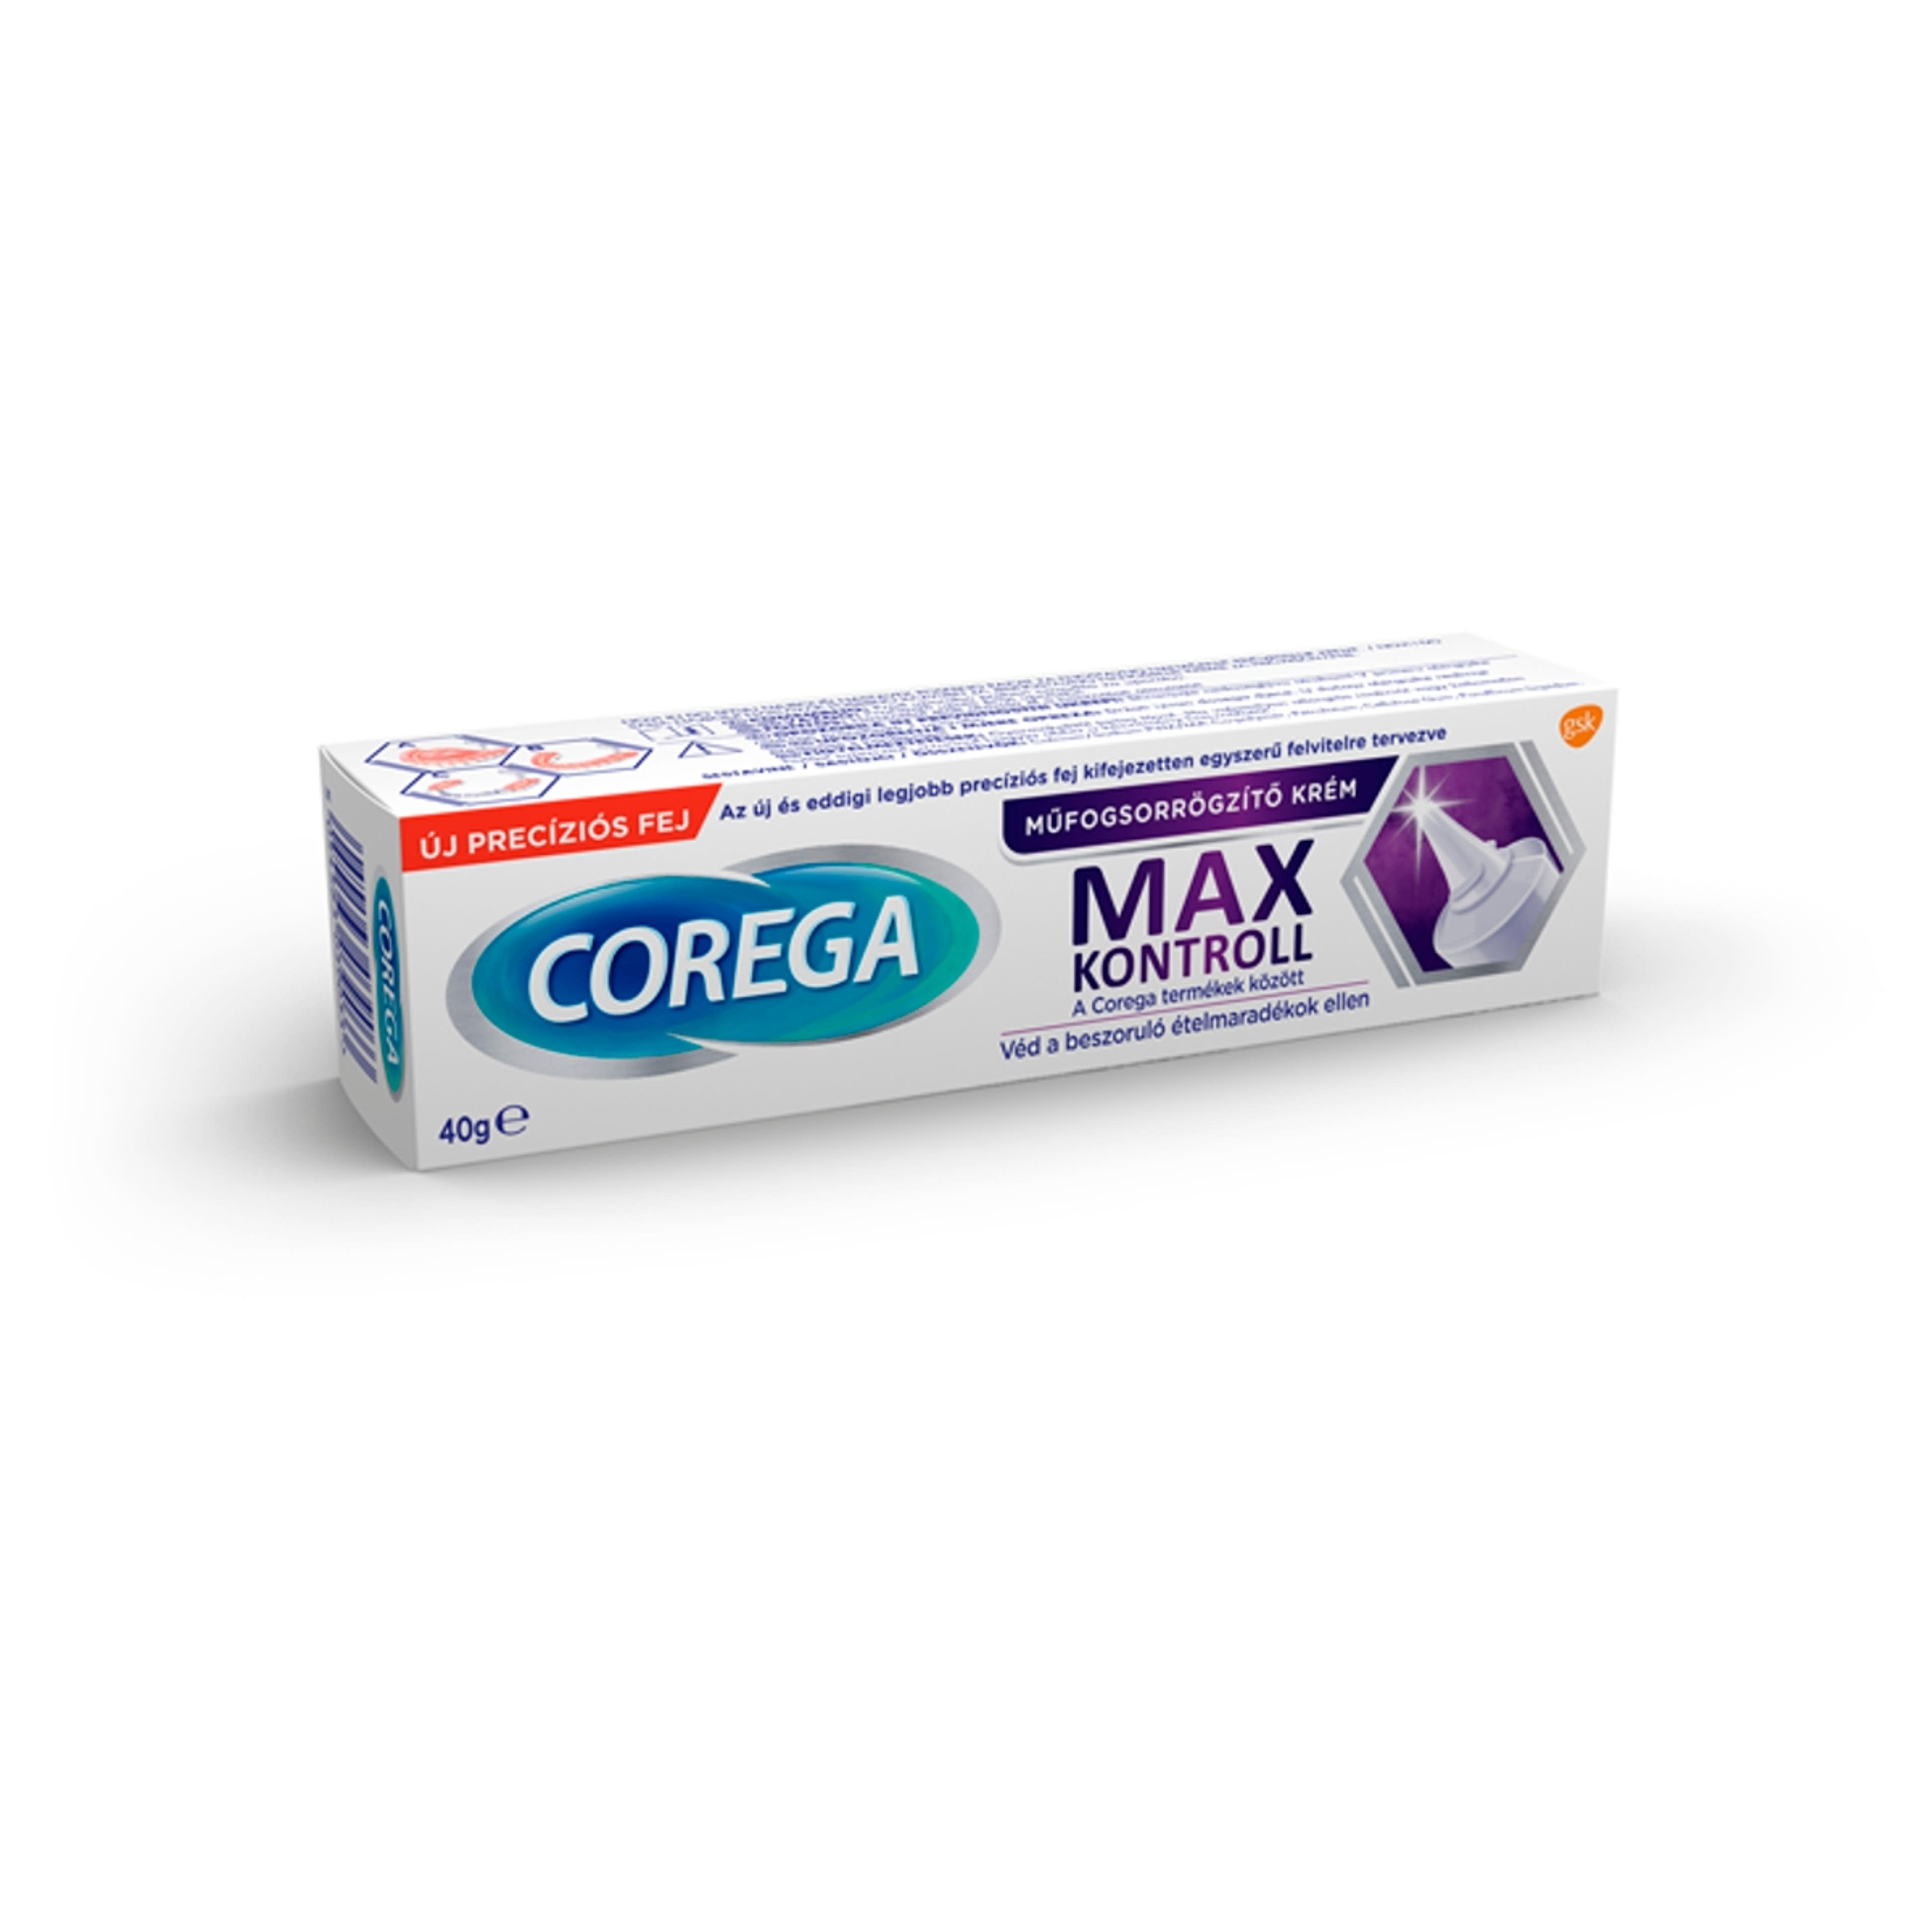 Corega Max Kontroll műfogsorrögzítő krém - 40 g-3